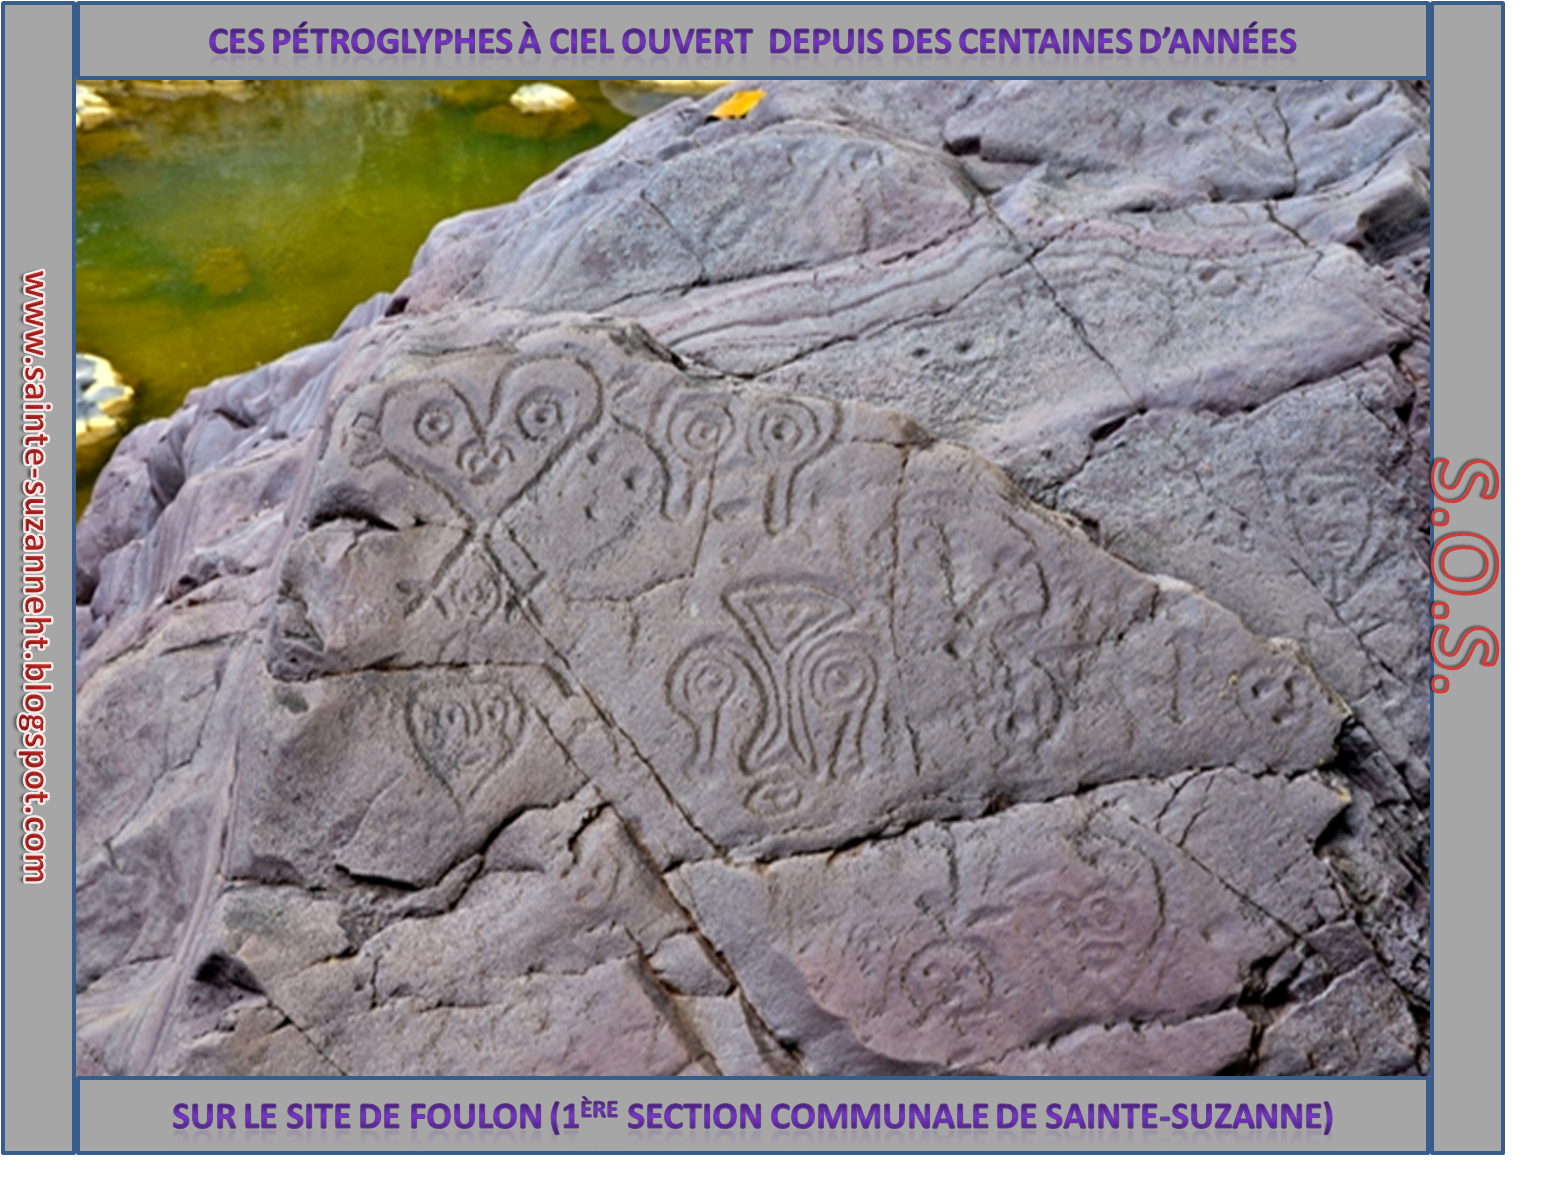 Photo des petroglyphes sur le site de Foulon